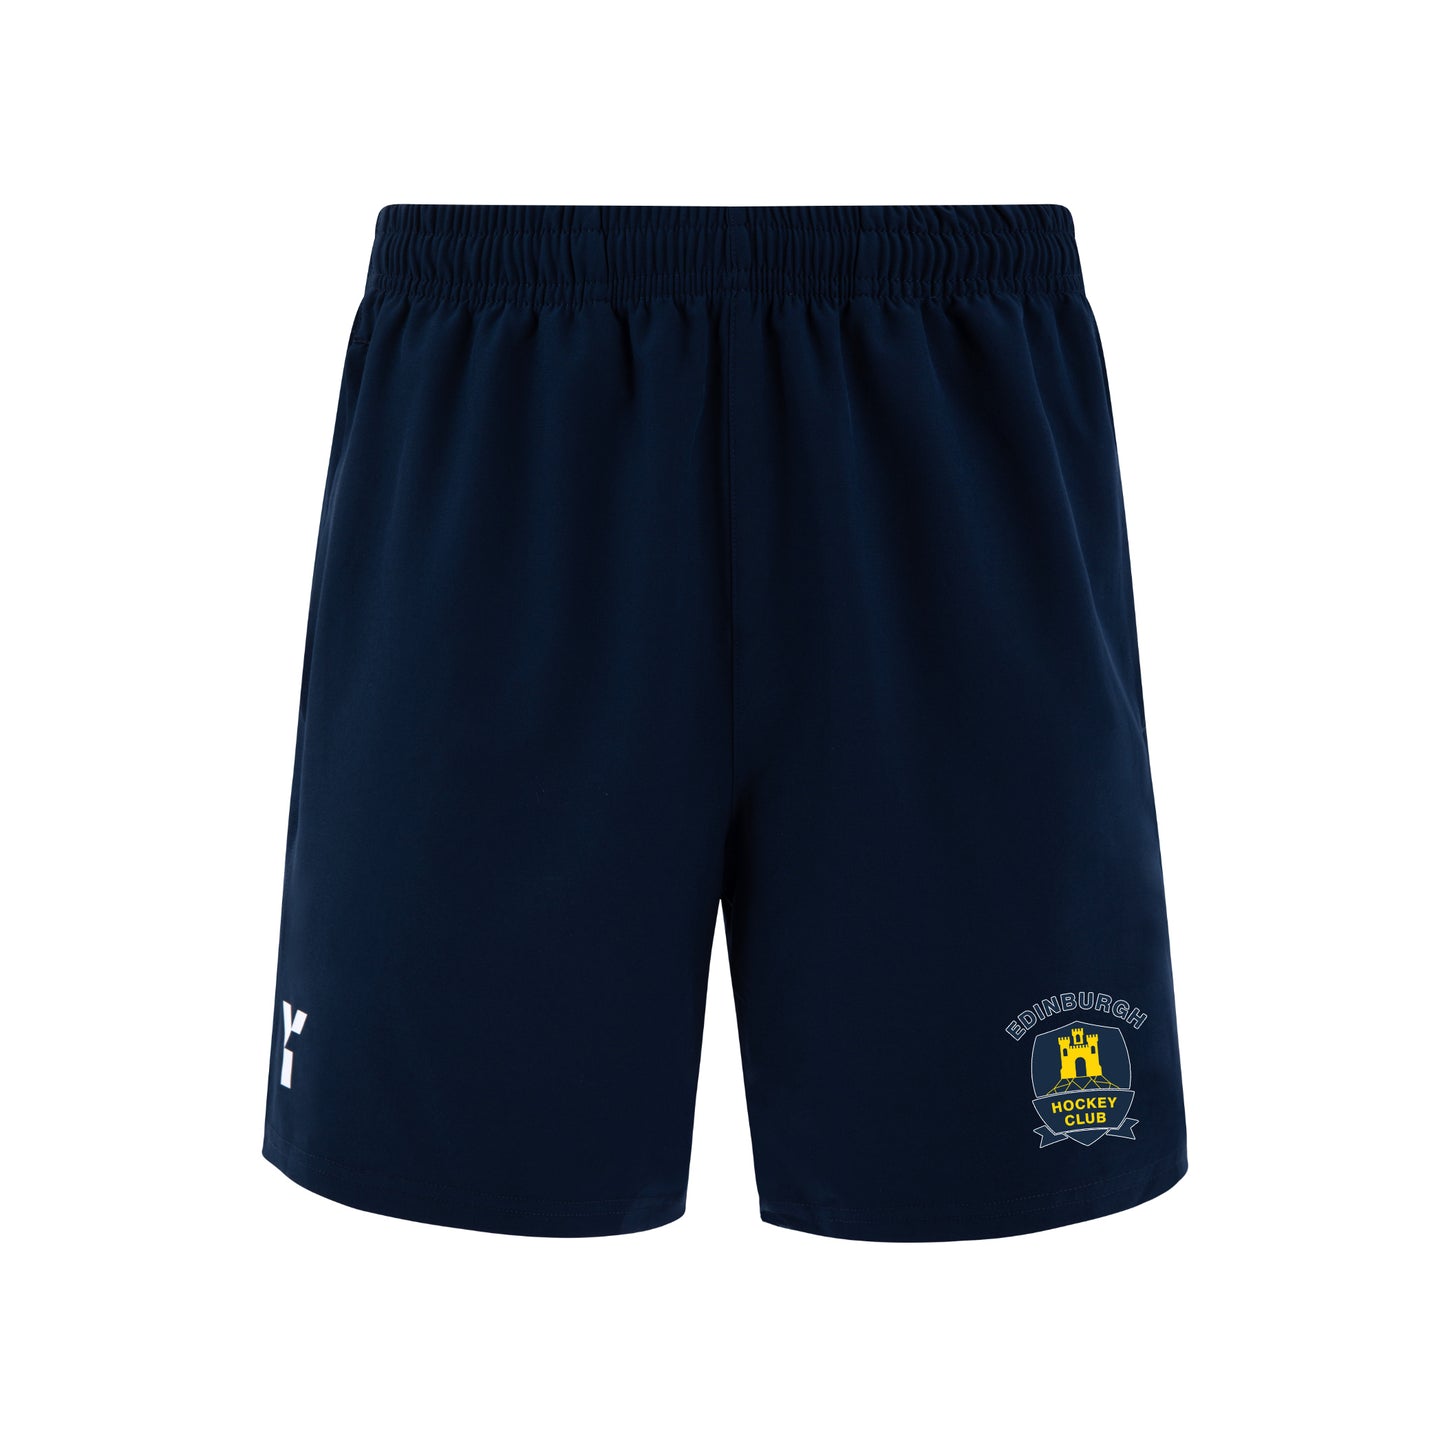 Edinburgh HC - Shorts Mens Navy